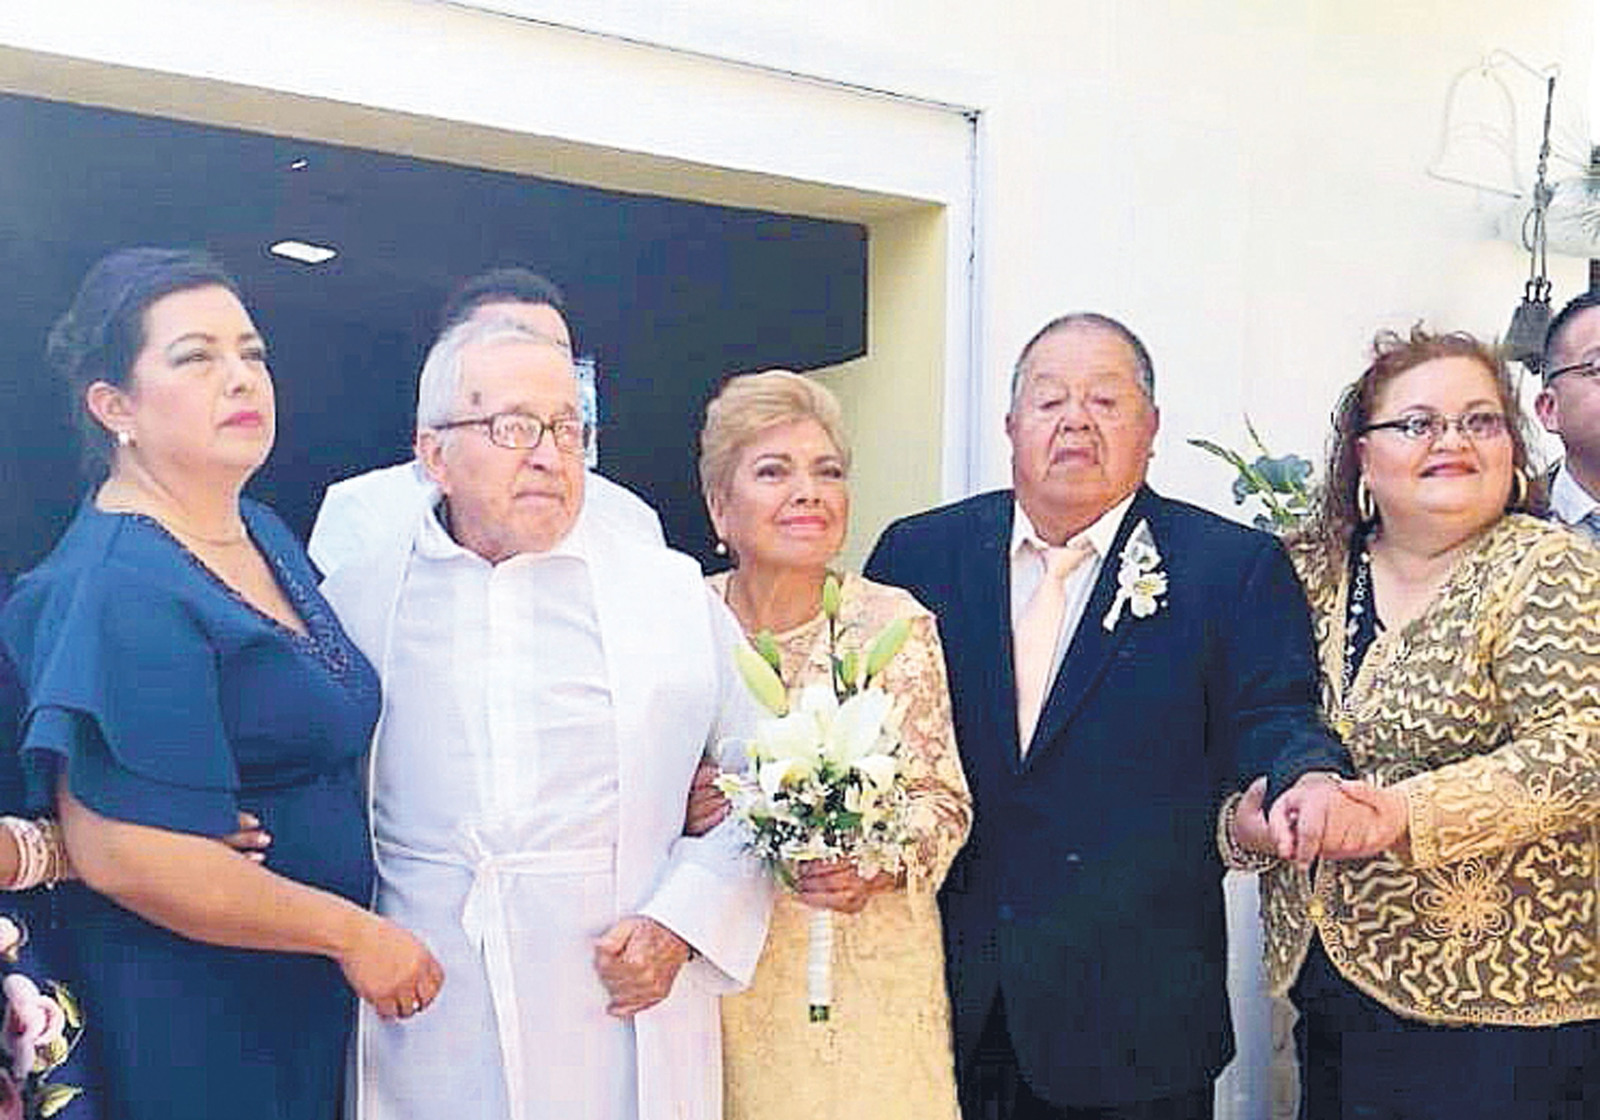 Unión. Federico y Elvira celebraron 50 años de casados en compañía de sus hijos, nietos y bisnieto; piensan seguir unidos. (EL UNIVERSAL)